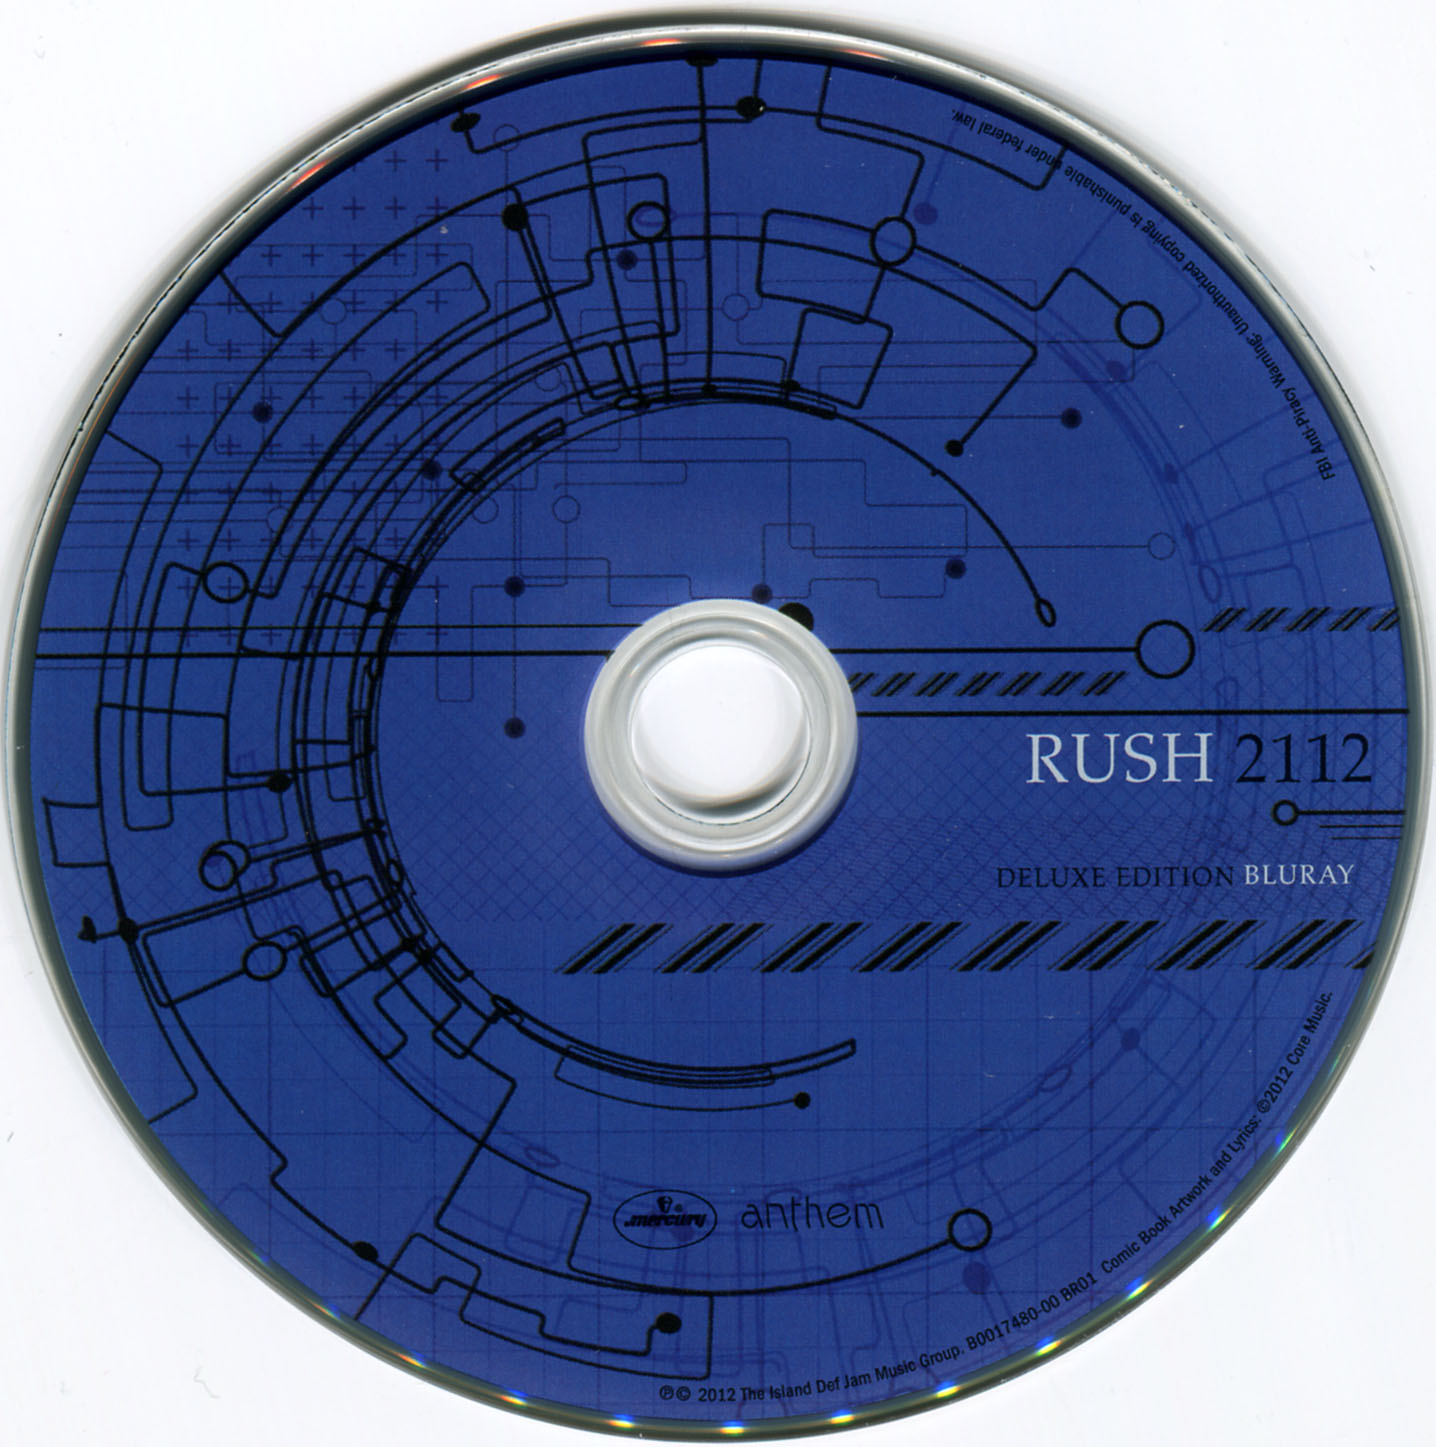 rush 2112 5.1 surround torrent